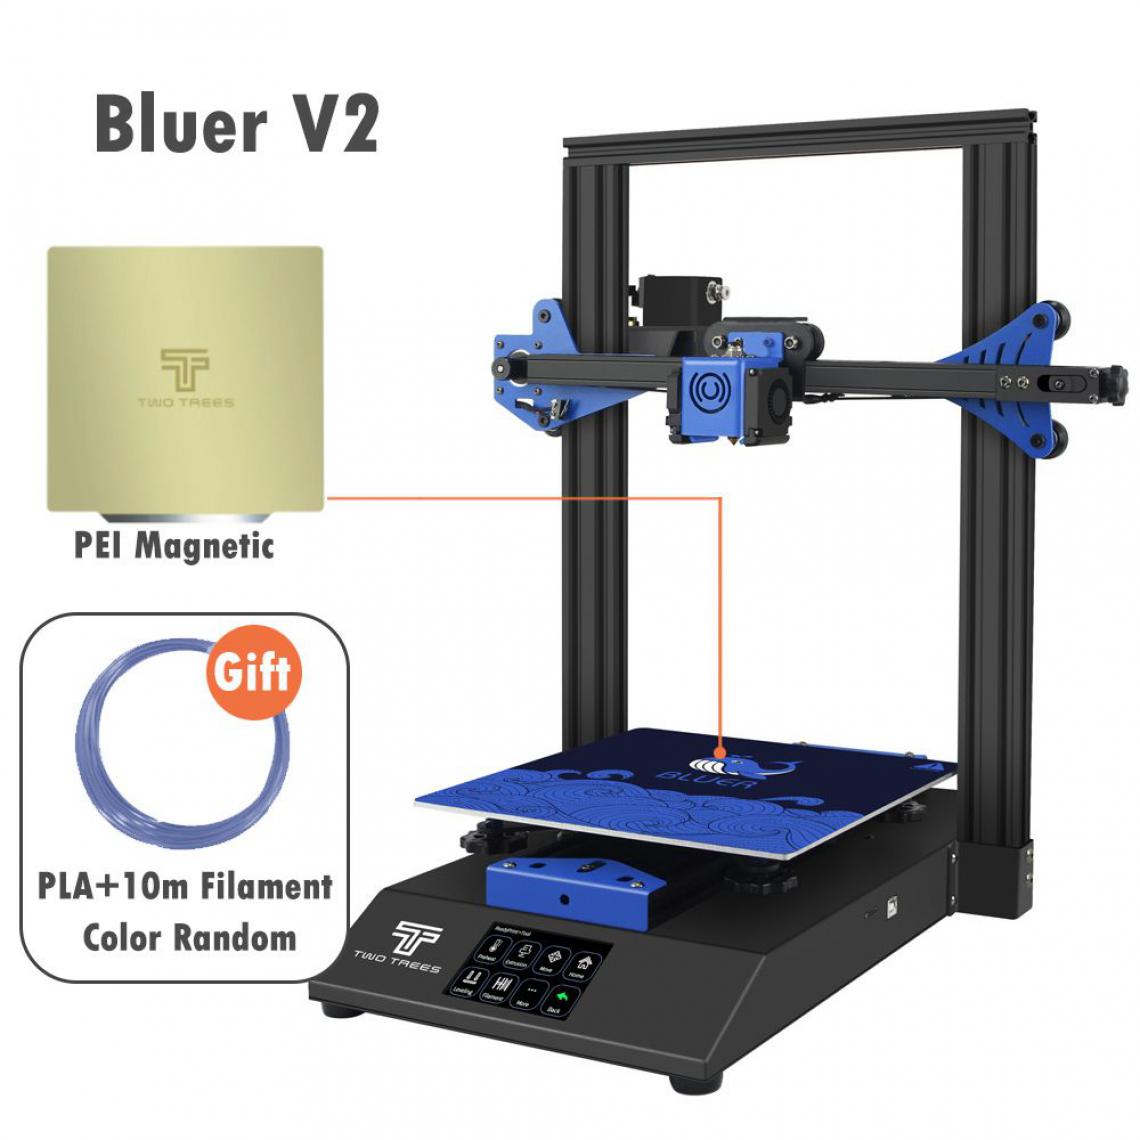 Generic - Imprimante 3D Bluer V2  , avec Pilote Silencieux et Écran Tactile Couleur TFT de Grande Taille et Glass Convient pour Filament  PLA, ABS, PETG,Wood  41 *40 * 52 cm - Noir  - Imprimante 3D